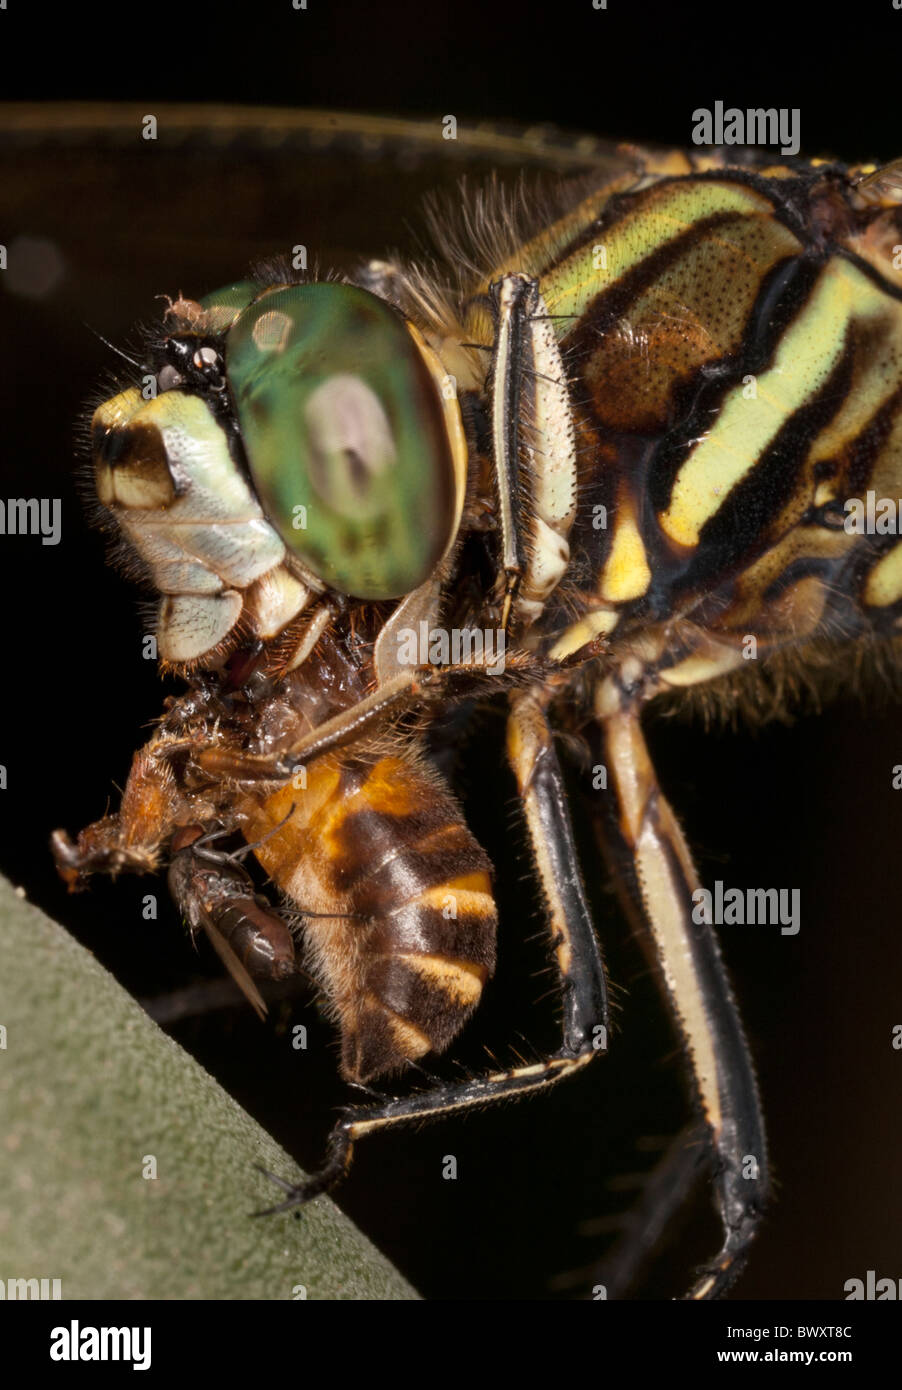 Cordulegaster Arten Essen eine Biene, ein Kleptoparasitic fliegen auf die Biene, phoretischen Milben und Läuse unter den Fittichen der Fliege Stockfoto